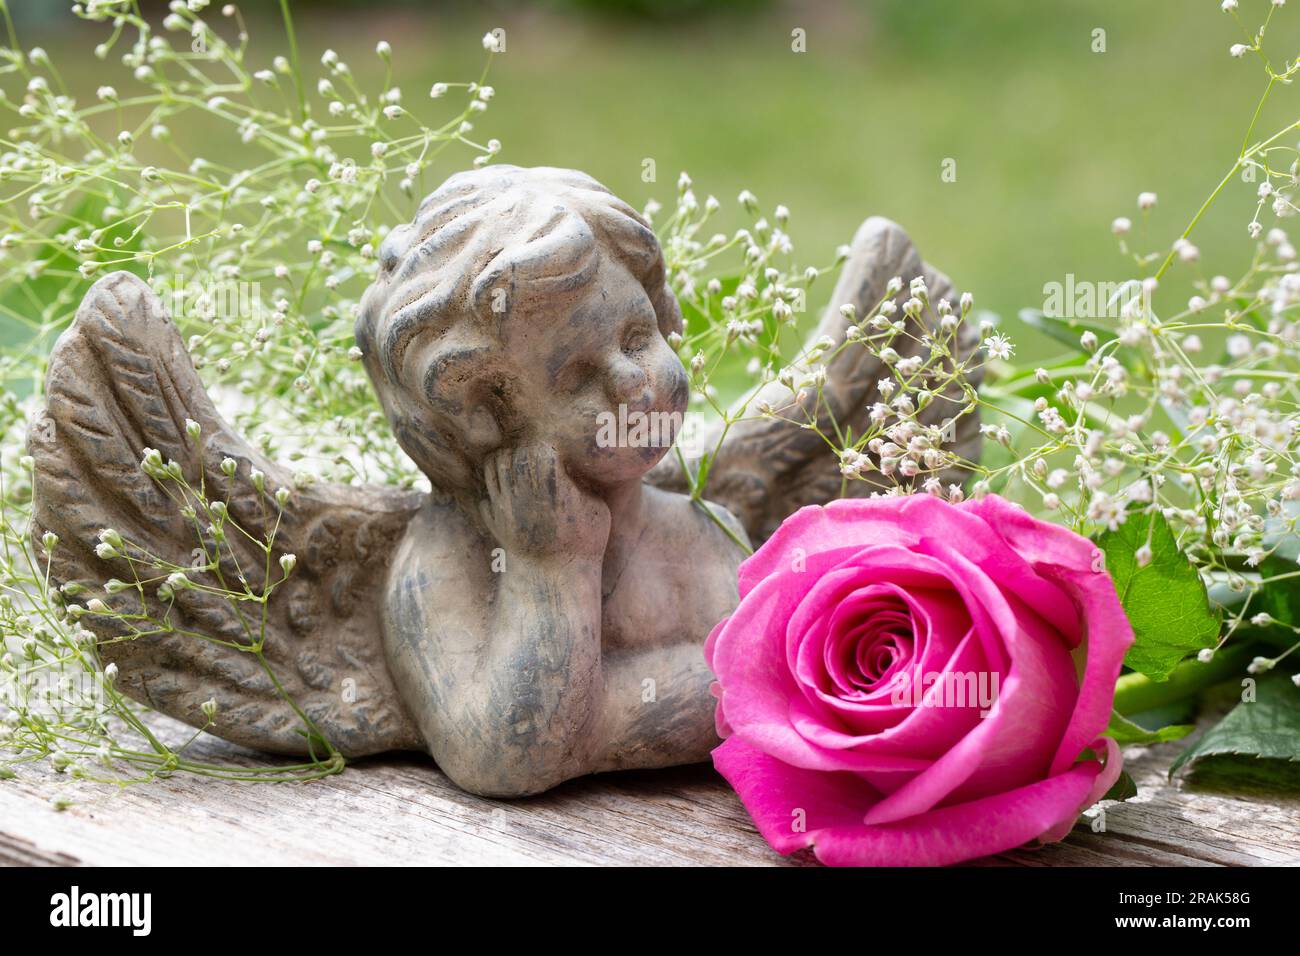 Piccola statuetta di angelo con rosa rosa e foglie verdi in un giardino Foto Stock